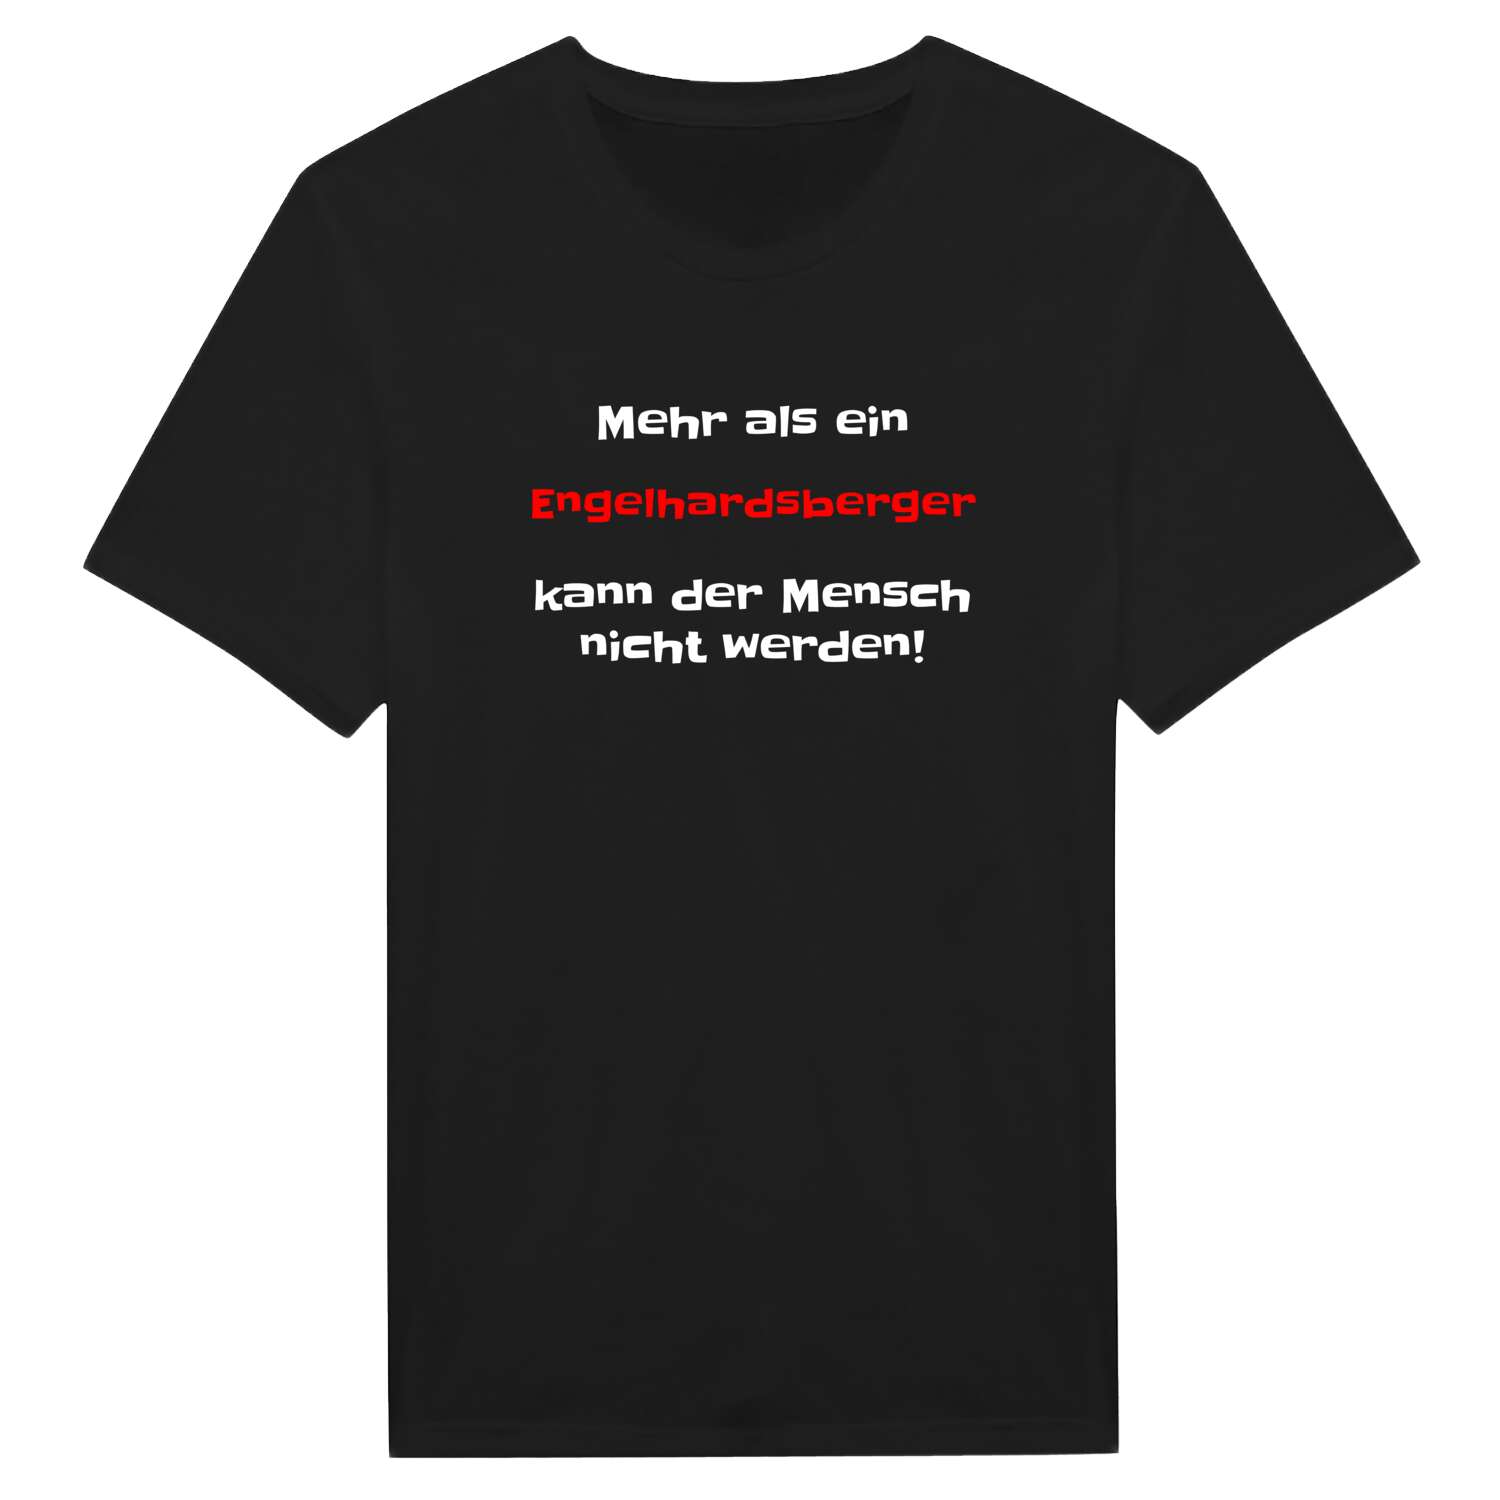 Engelhardsberg T-Shirt »Mehr als ein«